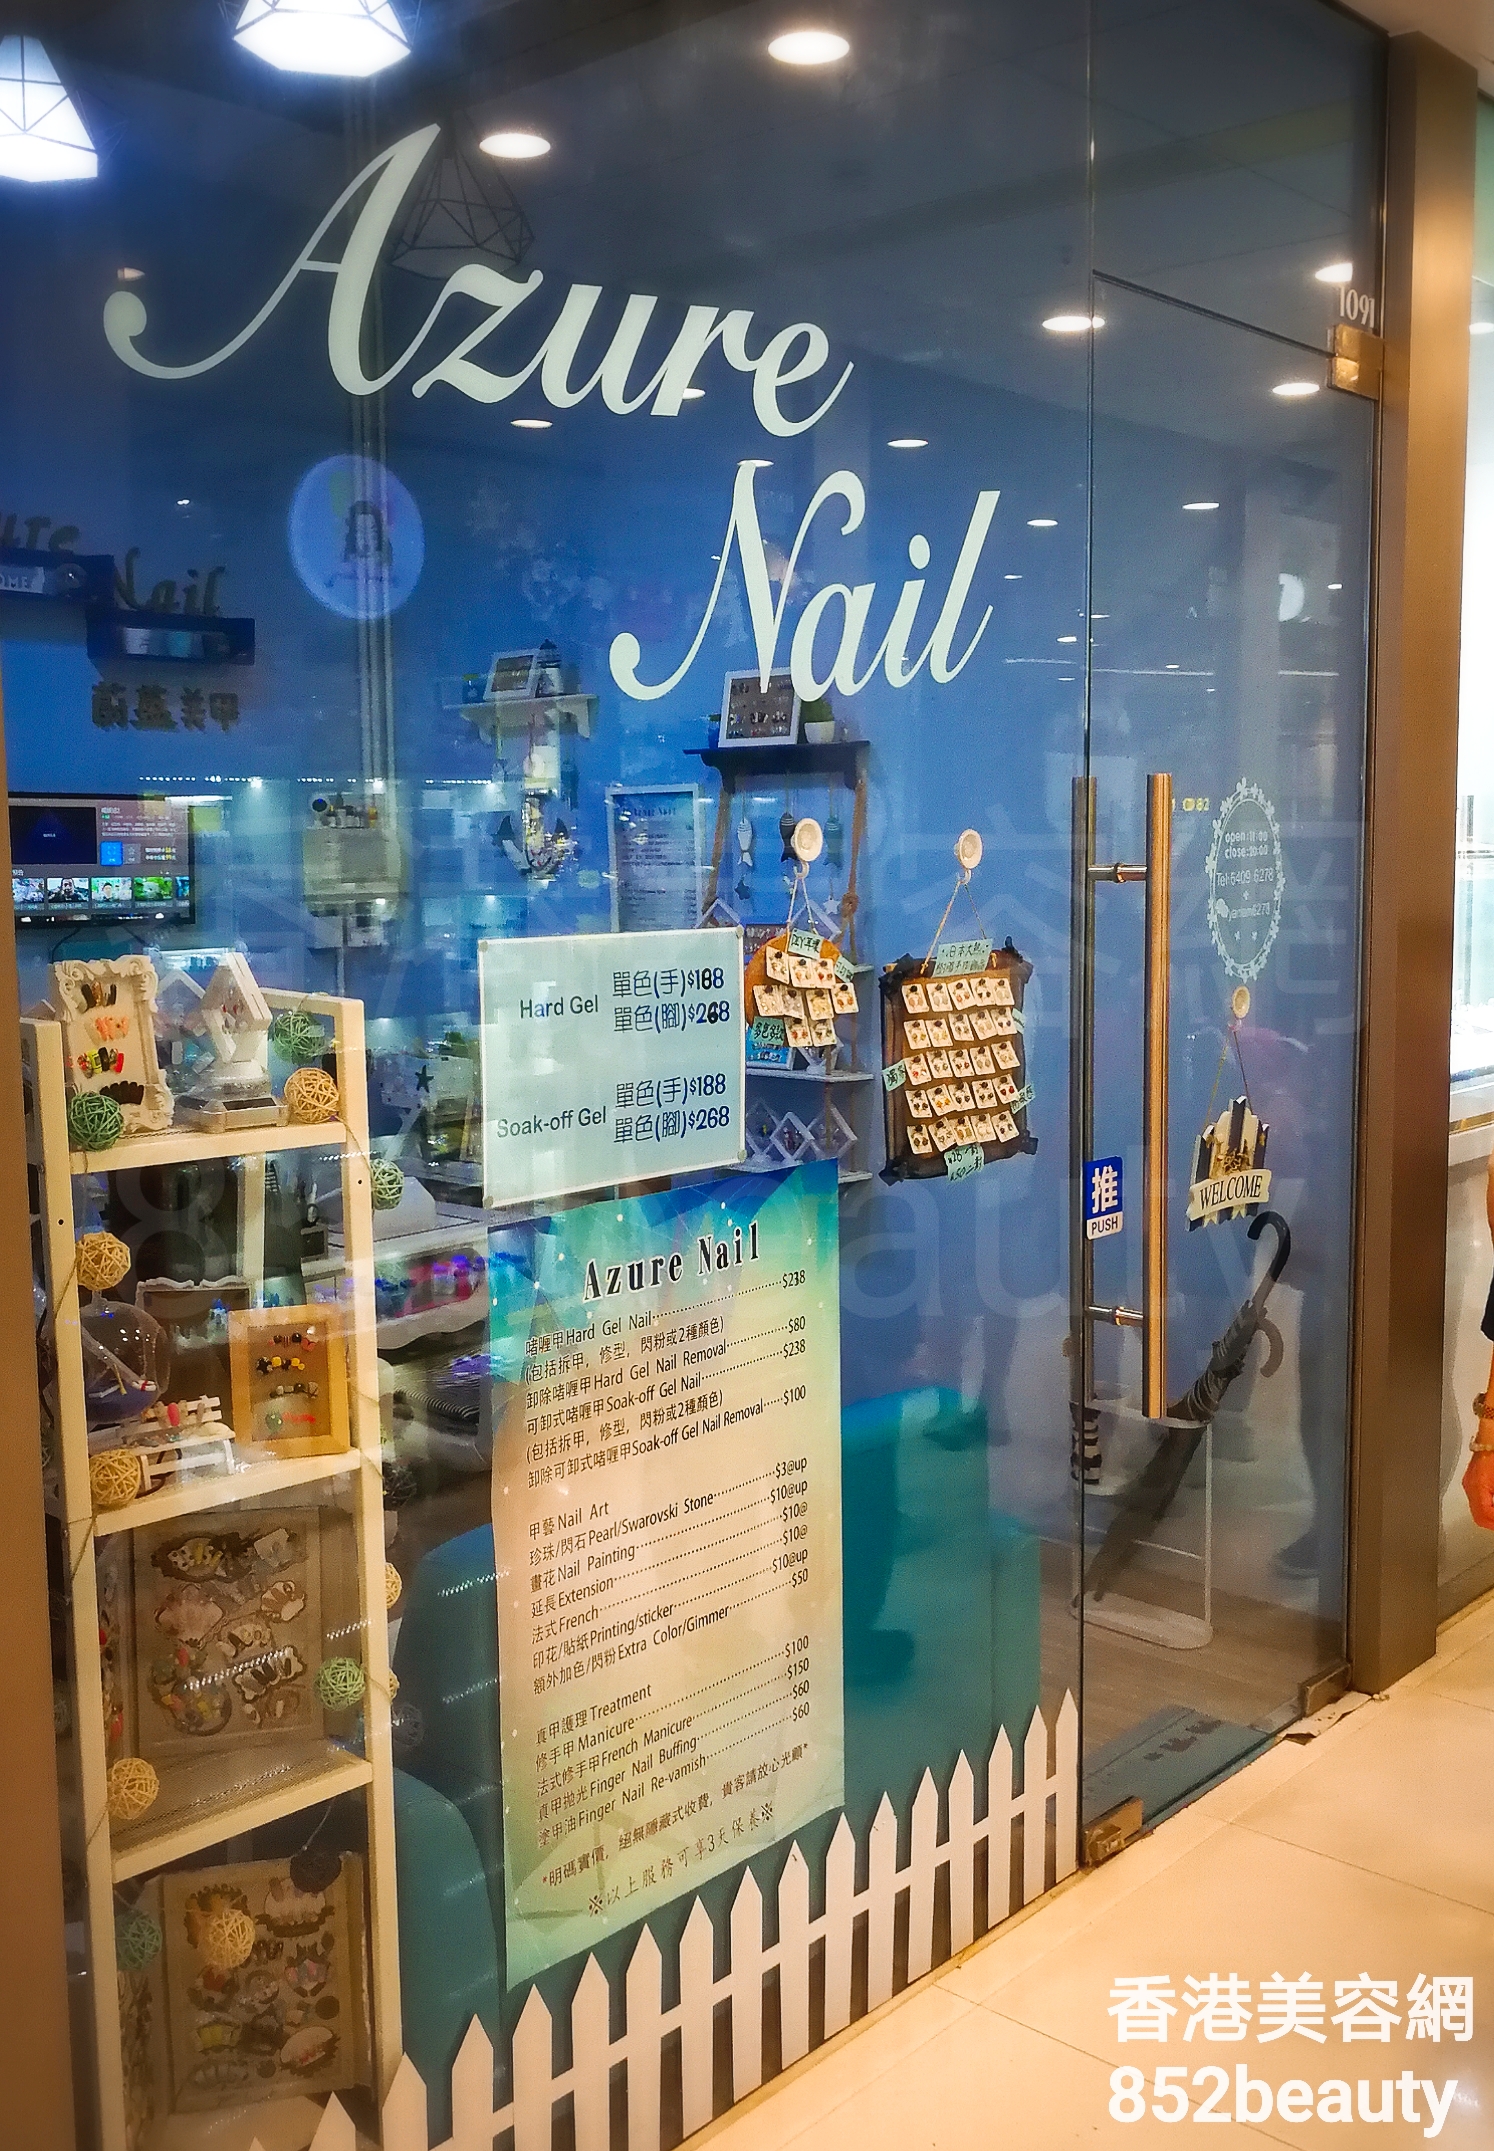 Manicure: Azure Nail